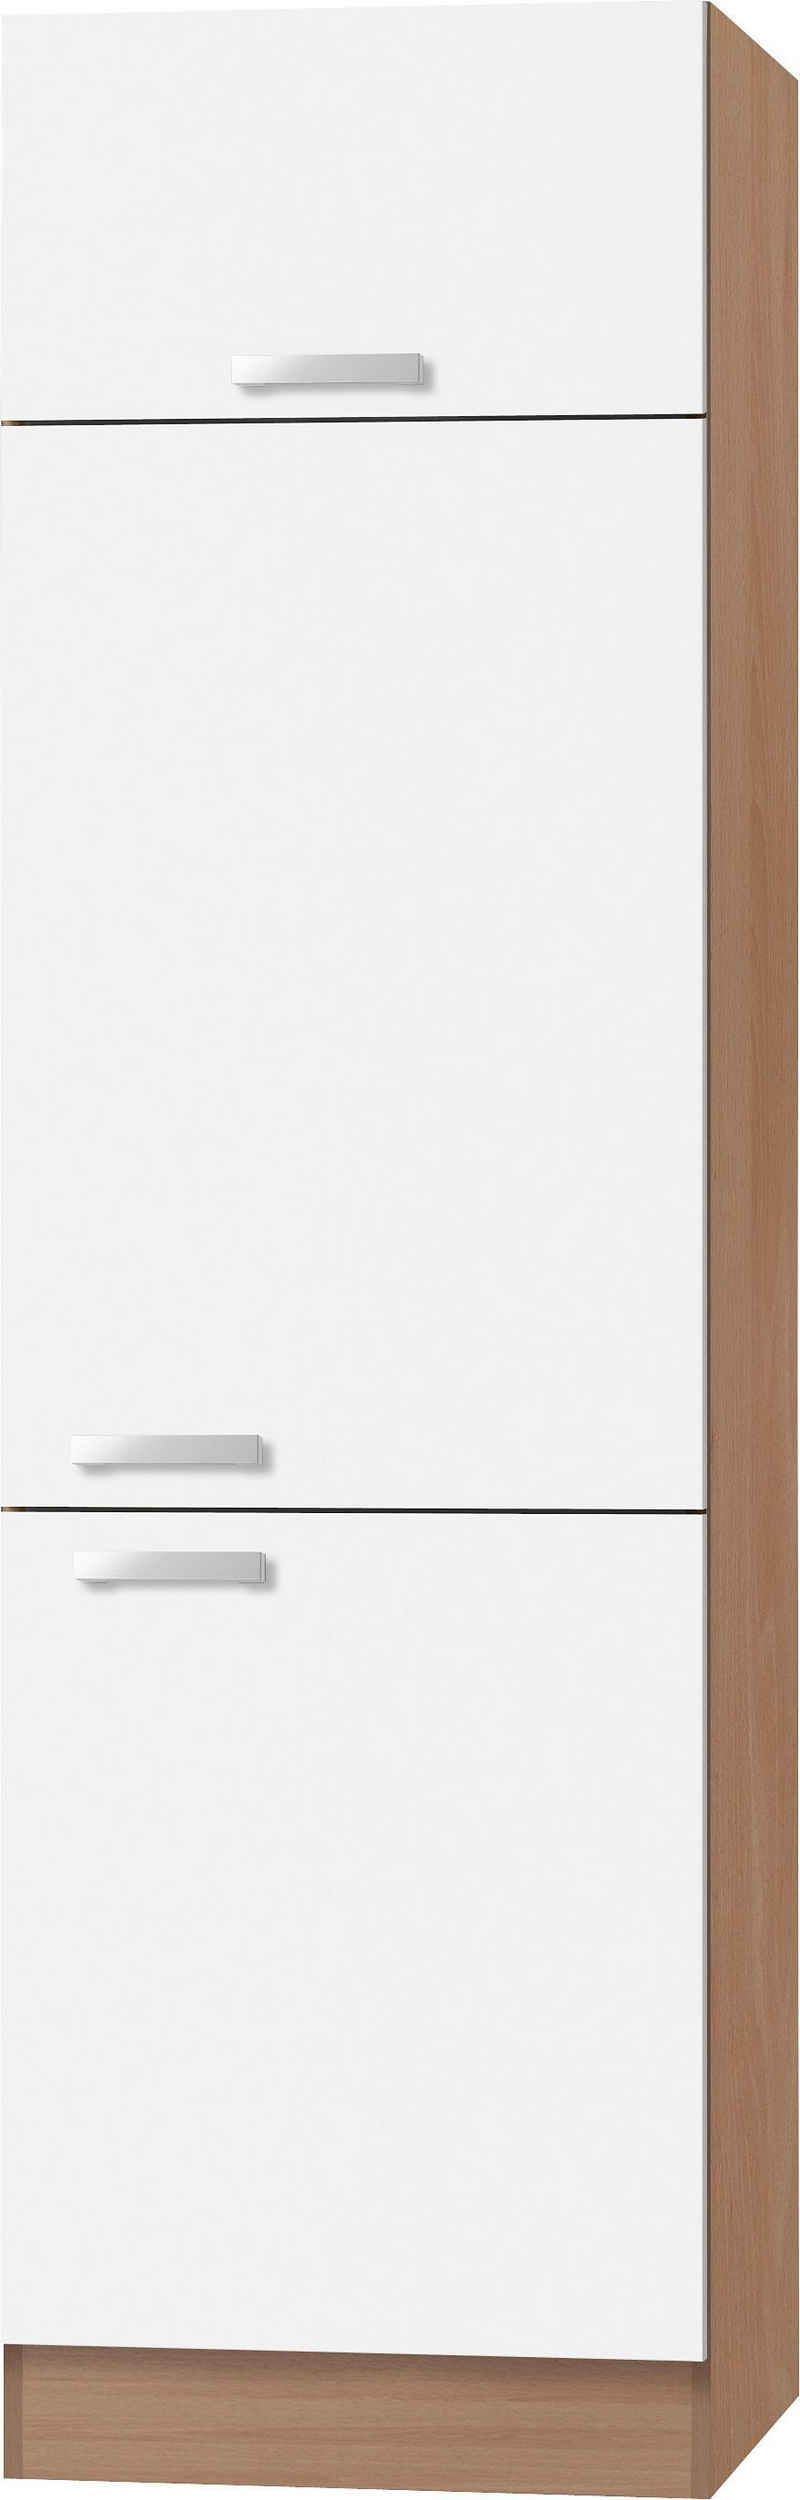 OPTIFIT Kühlumbauschrank Odense 60 cm breit, 207 cm hoch, geeignet für Einbaukühlschrank mit maß 88 cm